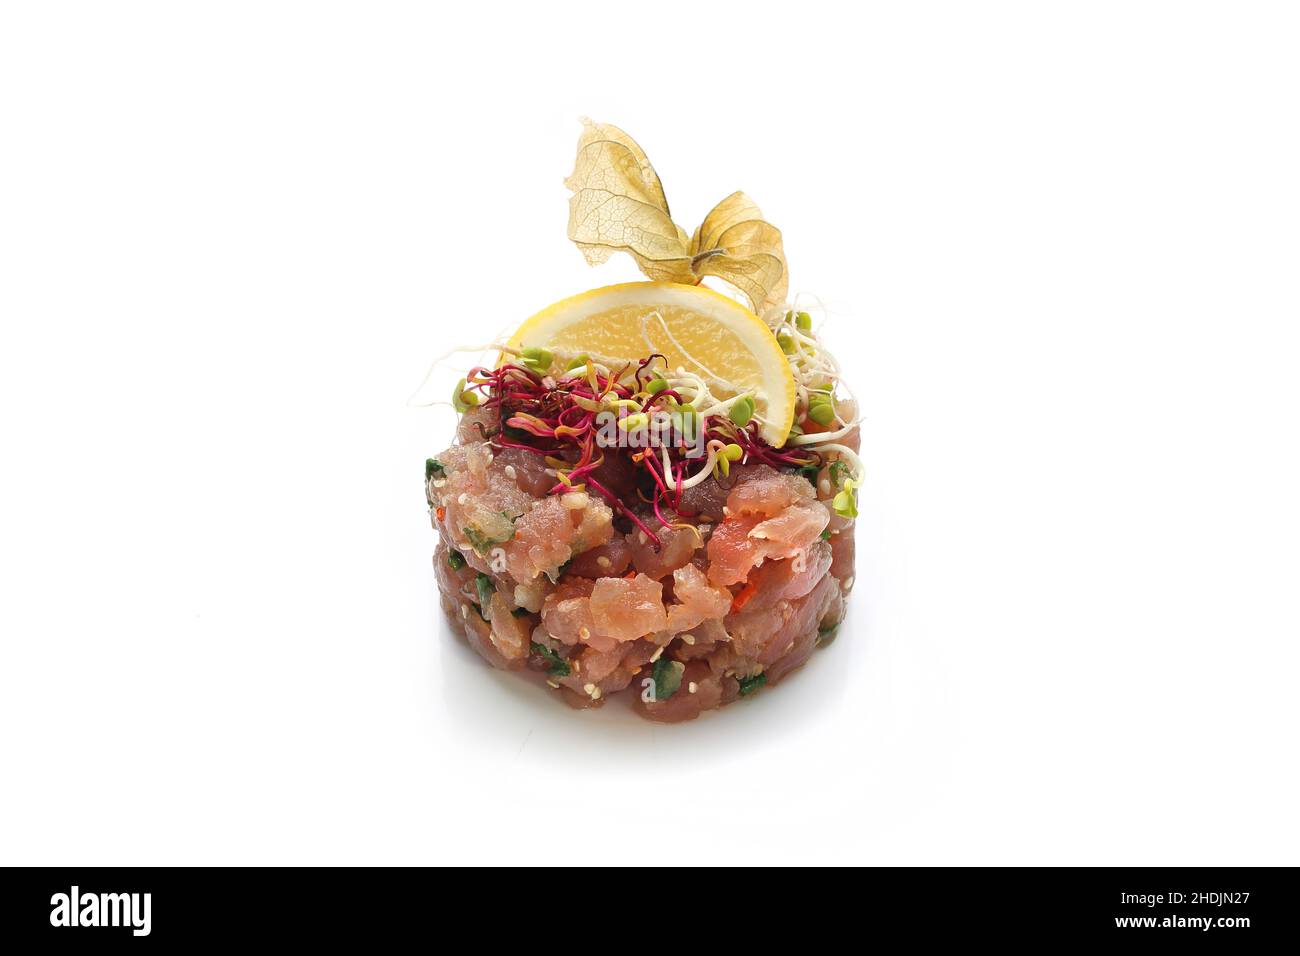 Tartare de saumon.Salade hachée avec du poisson et des légumes frais.Plat traditionnel japonais sur fond blanc. Banque D'Images